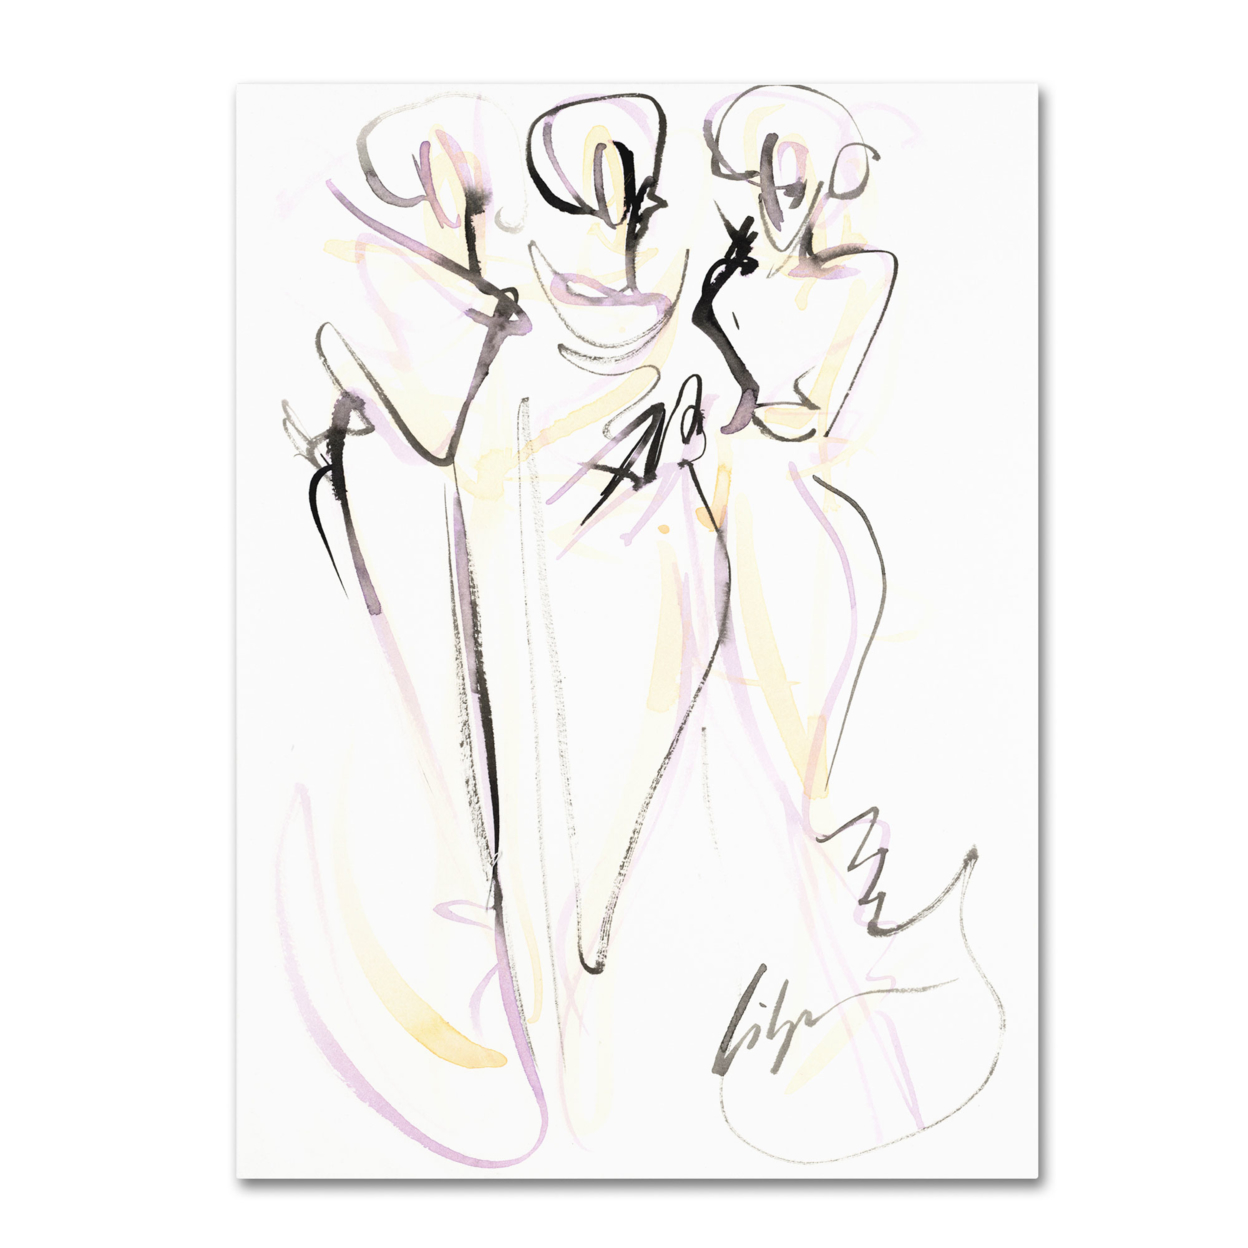 Jennifer Lilya 'Muses' Canvas Wall Art 35 X 47 Inches